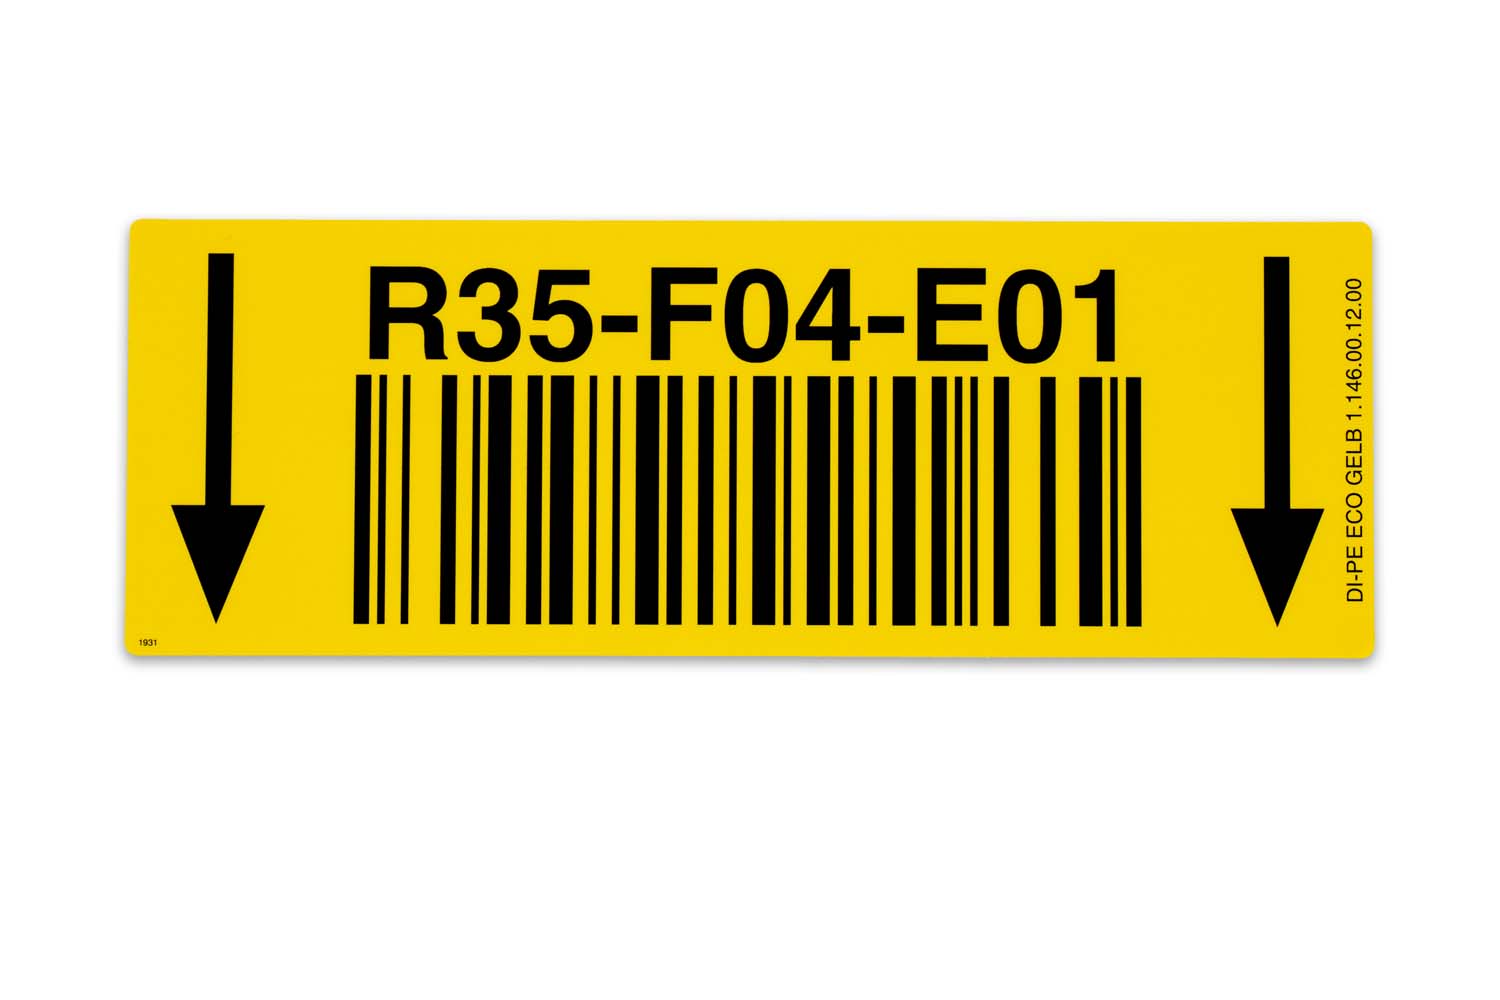 Das schnell und flexibel produzierte Barcode-Etikett in Gelb